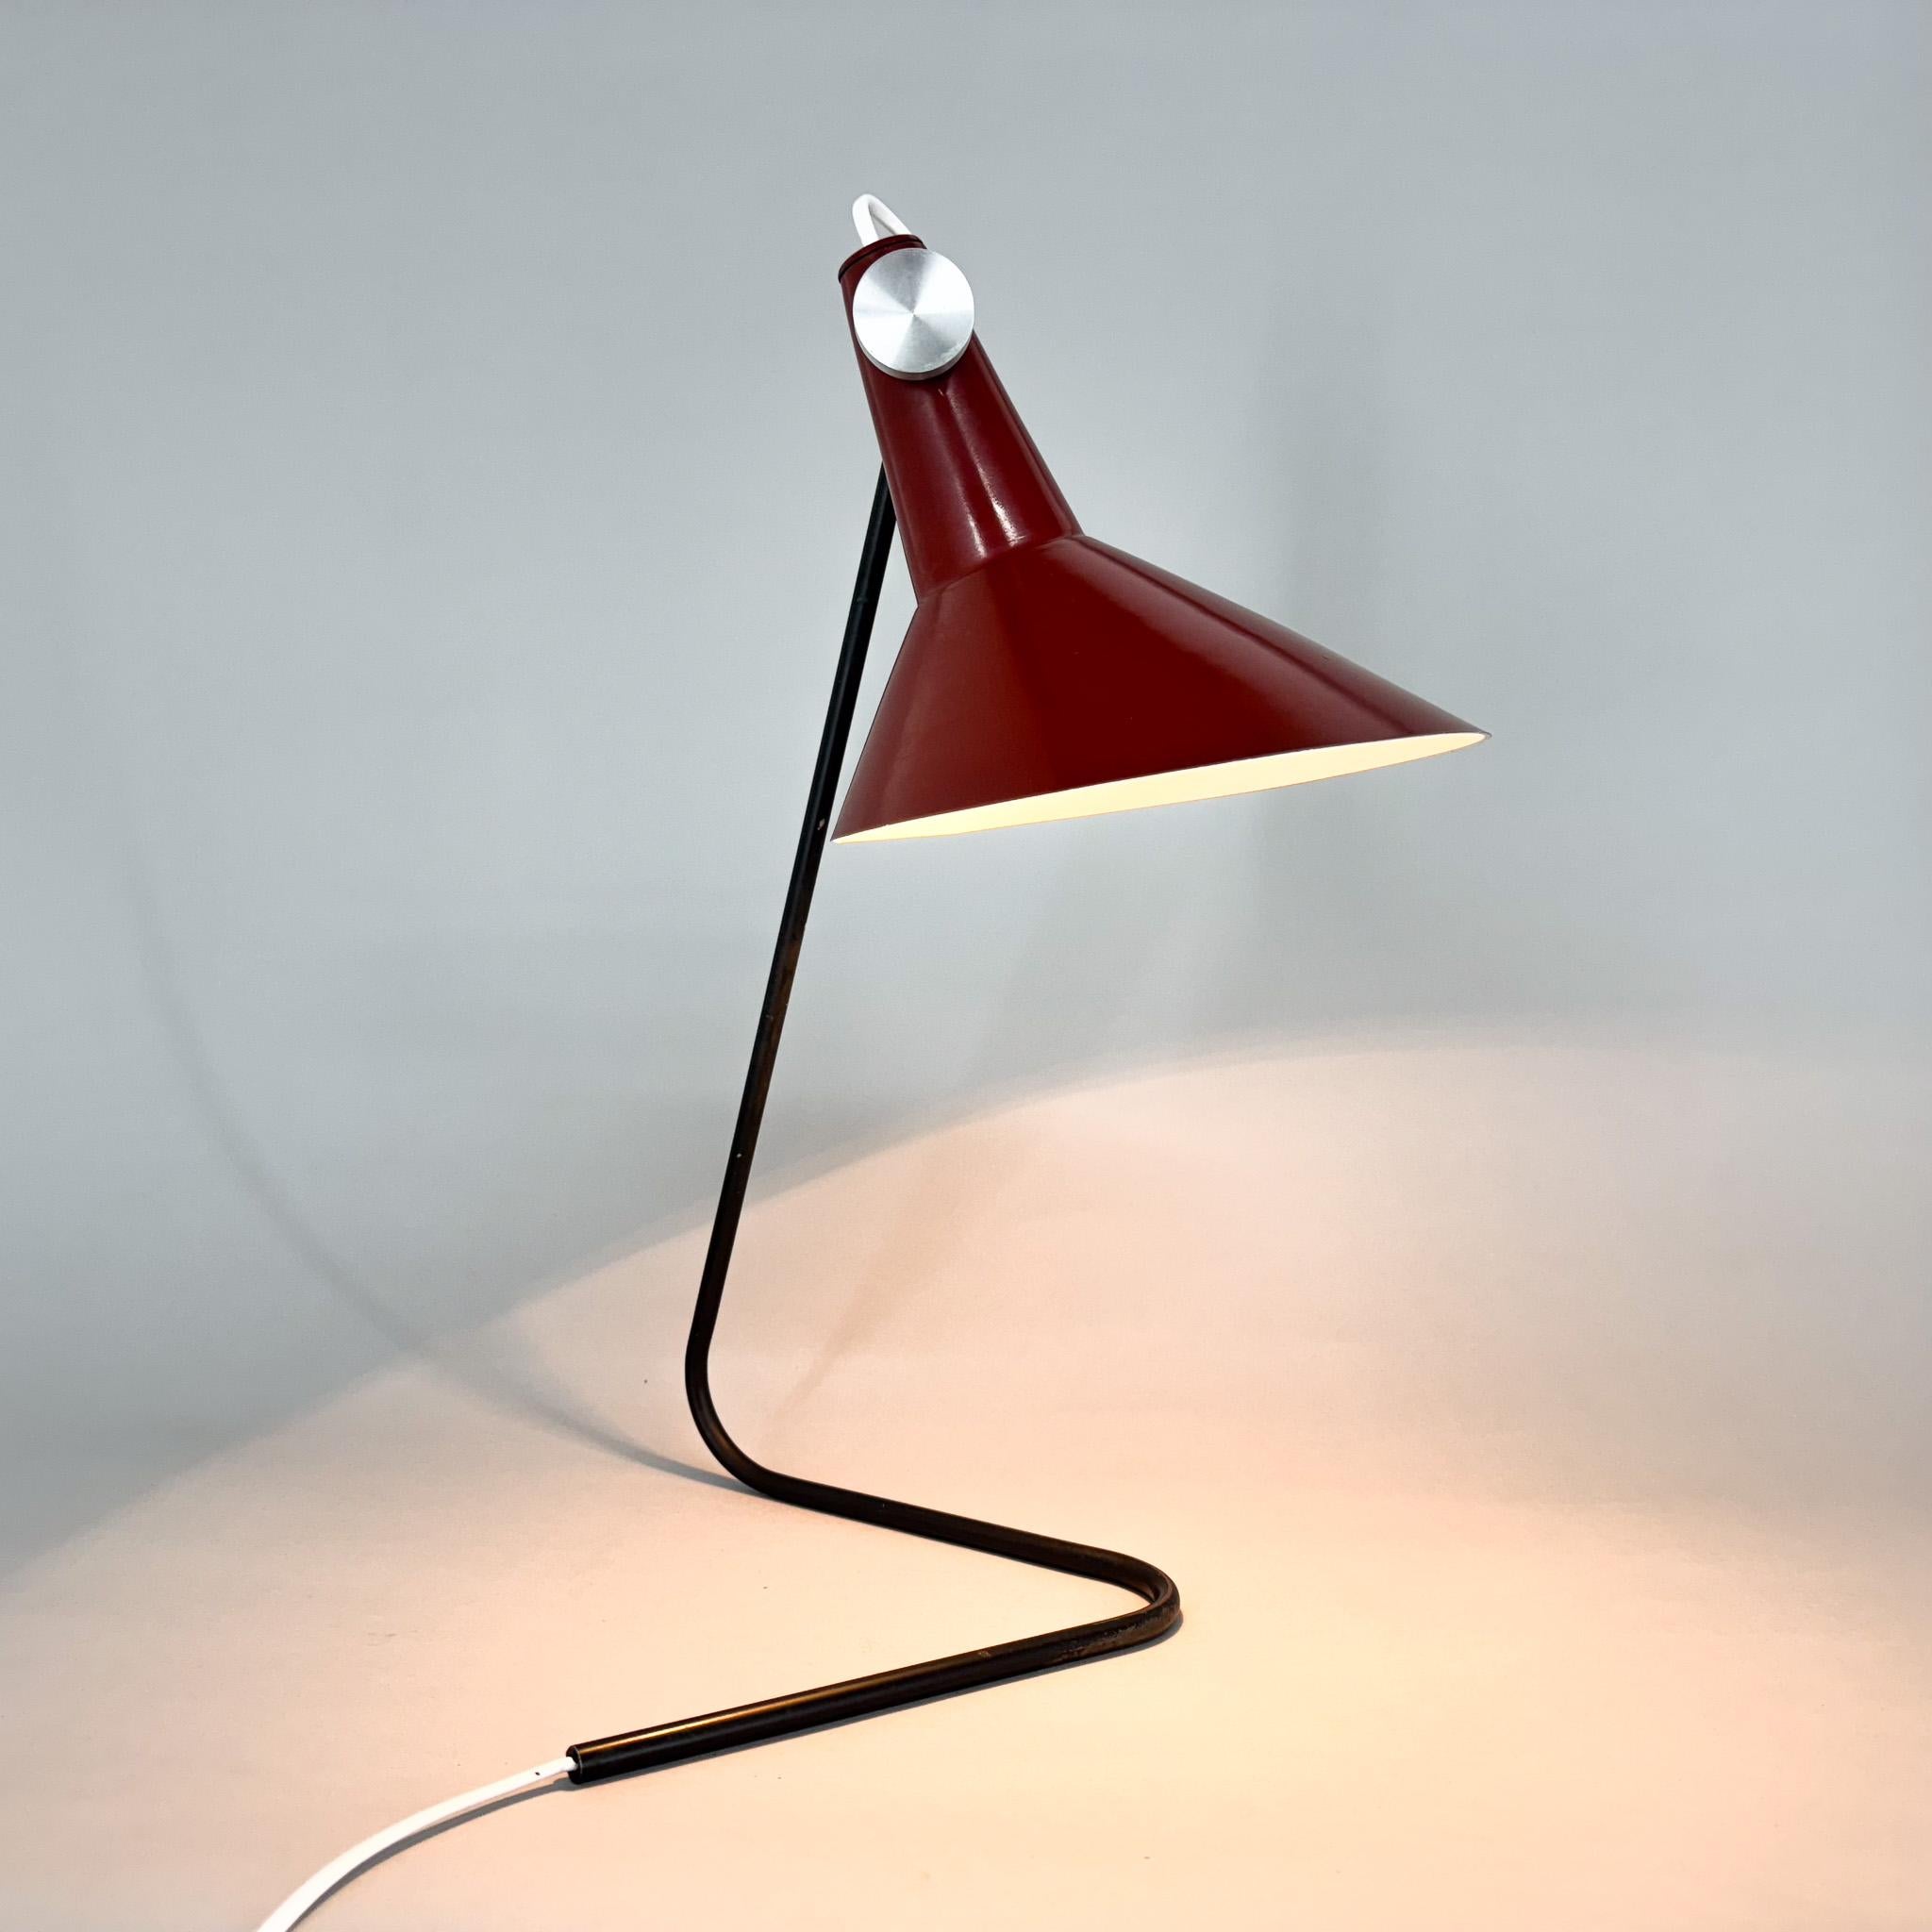  Vintage Metall Tischlampe mit verstellbarem Lampenschirm. Entworfen vom berühmten Josef Hurka für Kovona in der ehemaligen Tschechoslowakei in den 1960er Jahren. Typ ST30. Glühbirne 1 x E26 - E27. Inklusive US-Adapter.